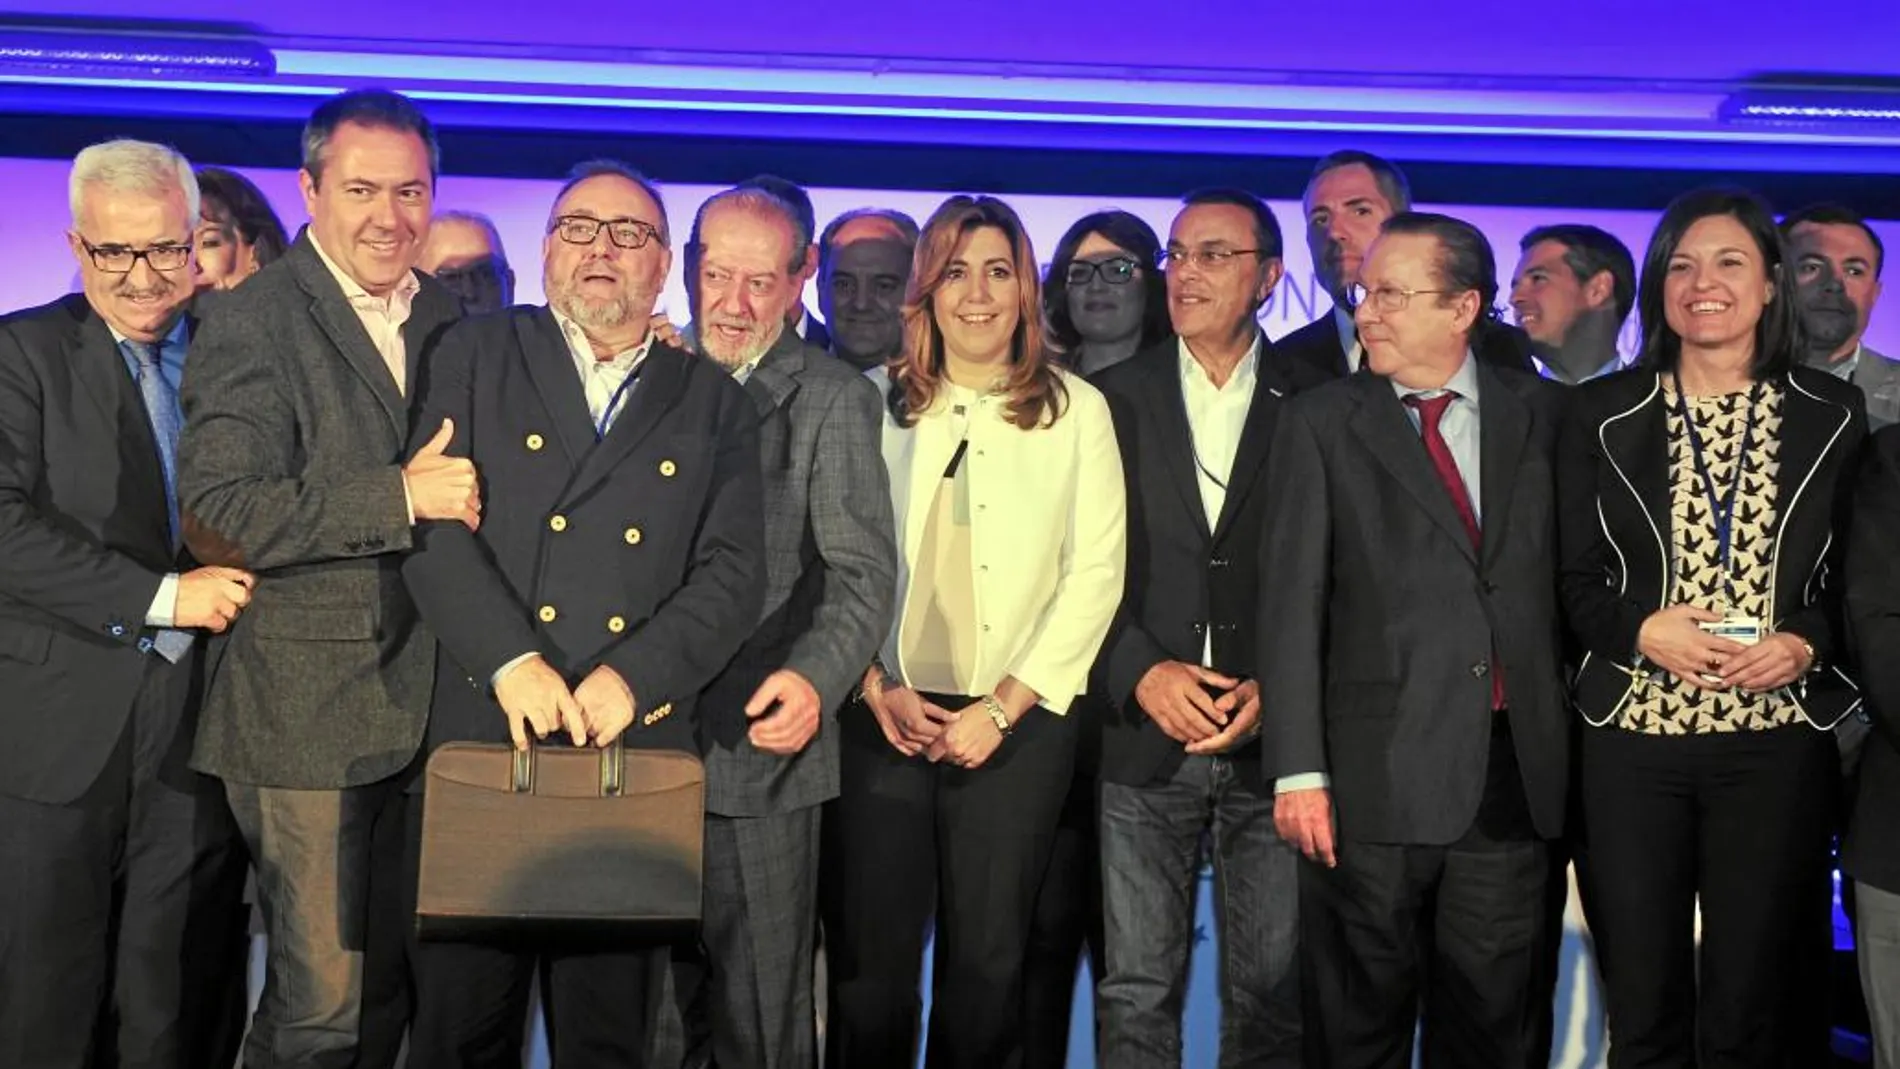 La presidenta andaluza, junto a cargos del PSOE, en la IX Asamblea de la Federación Andaluza de Municipios y Provincias